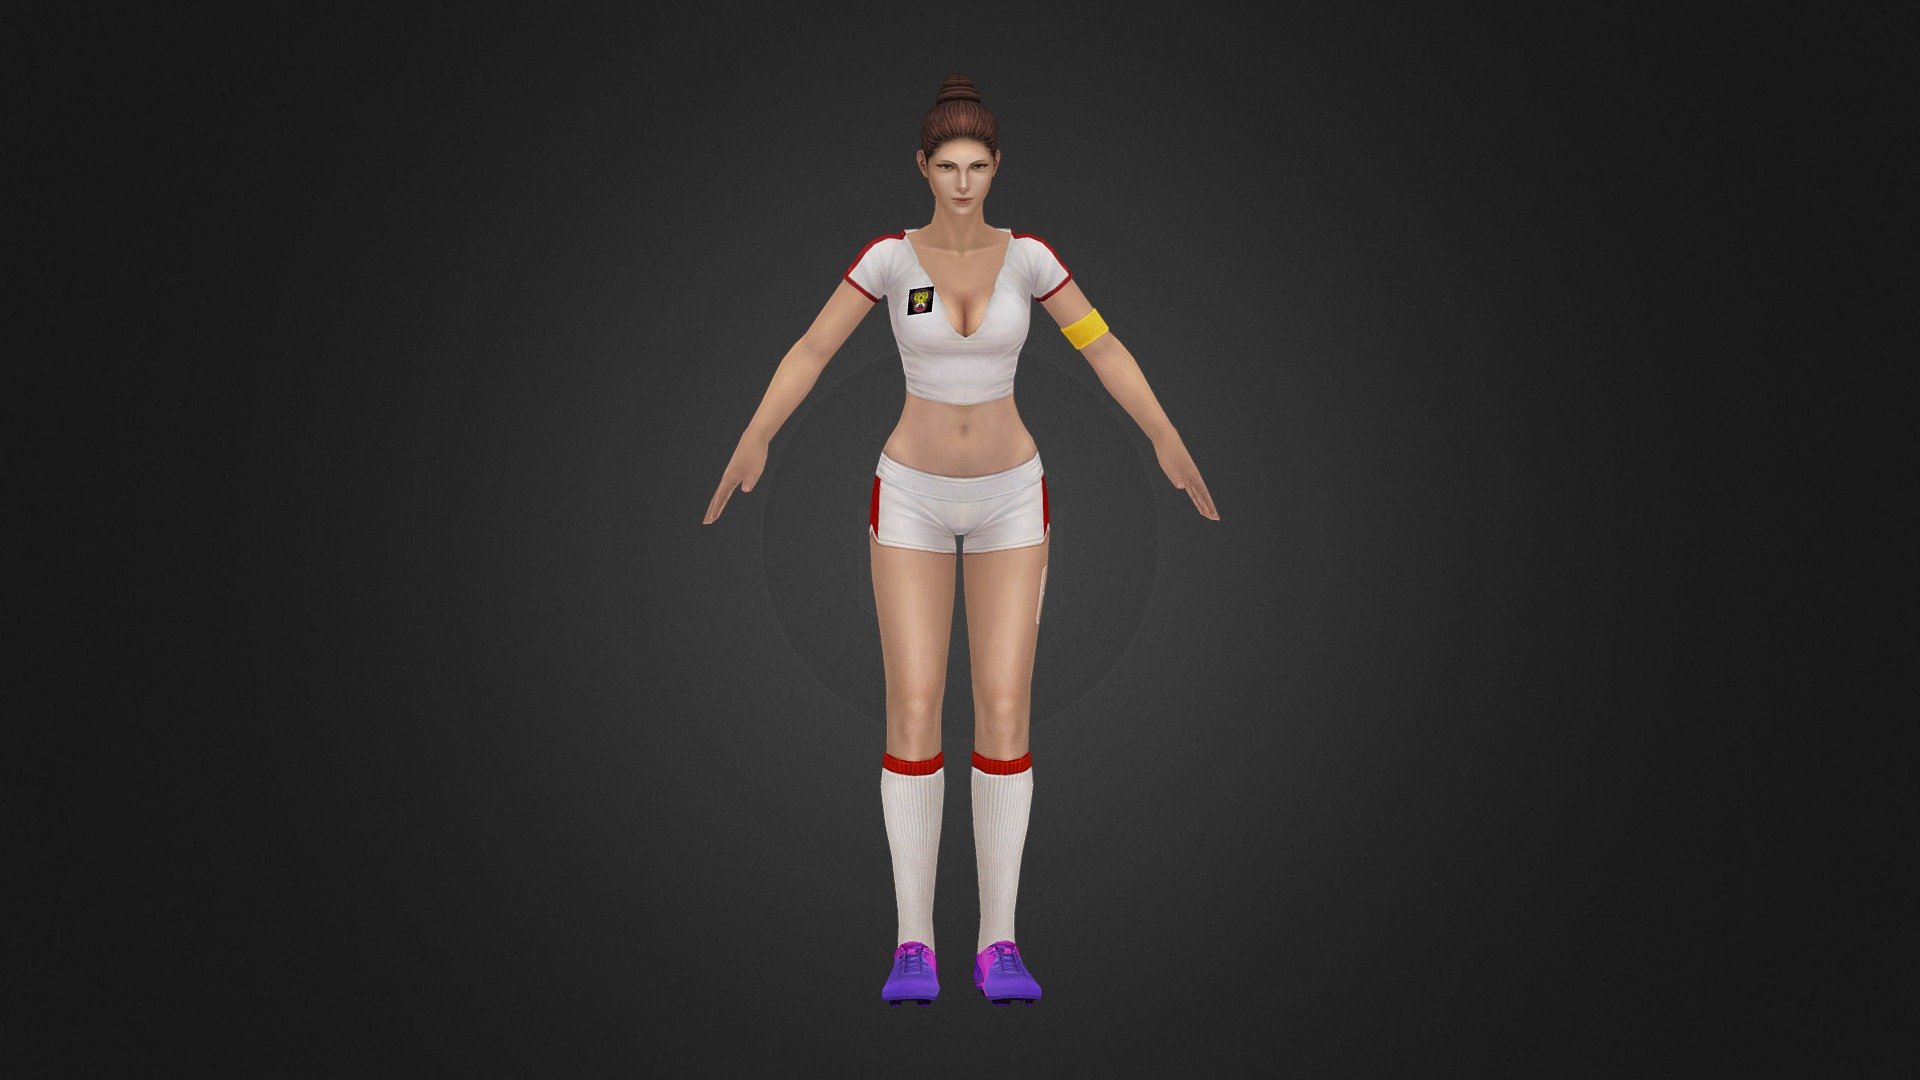 Marien Soccer - 3D model by Dimac 3d model